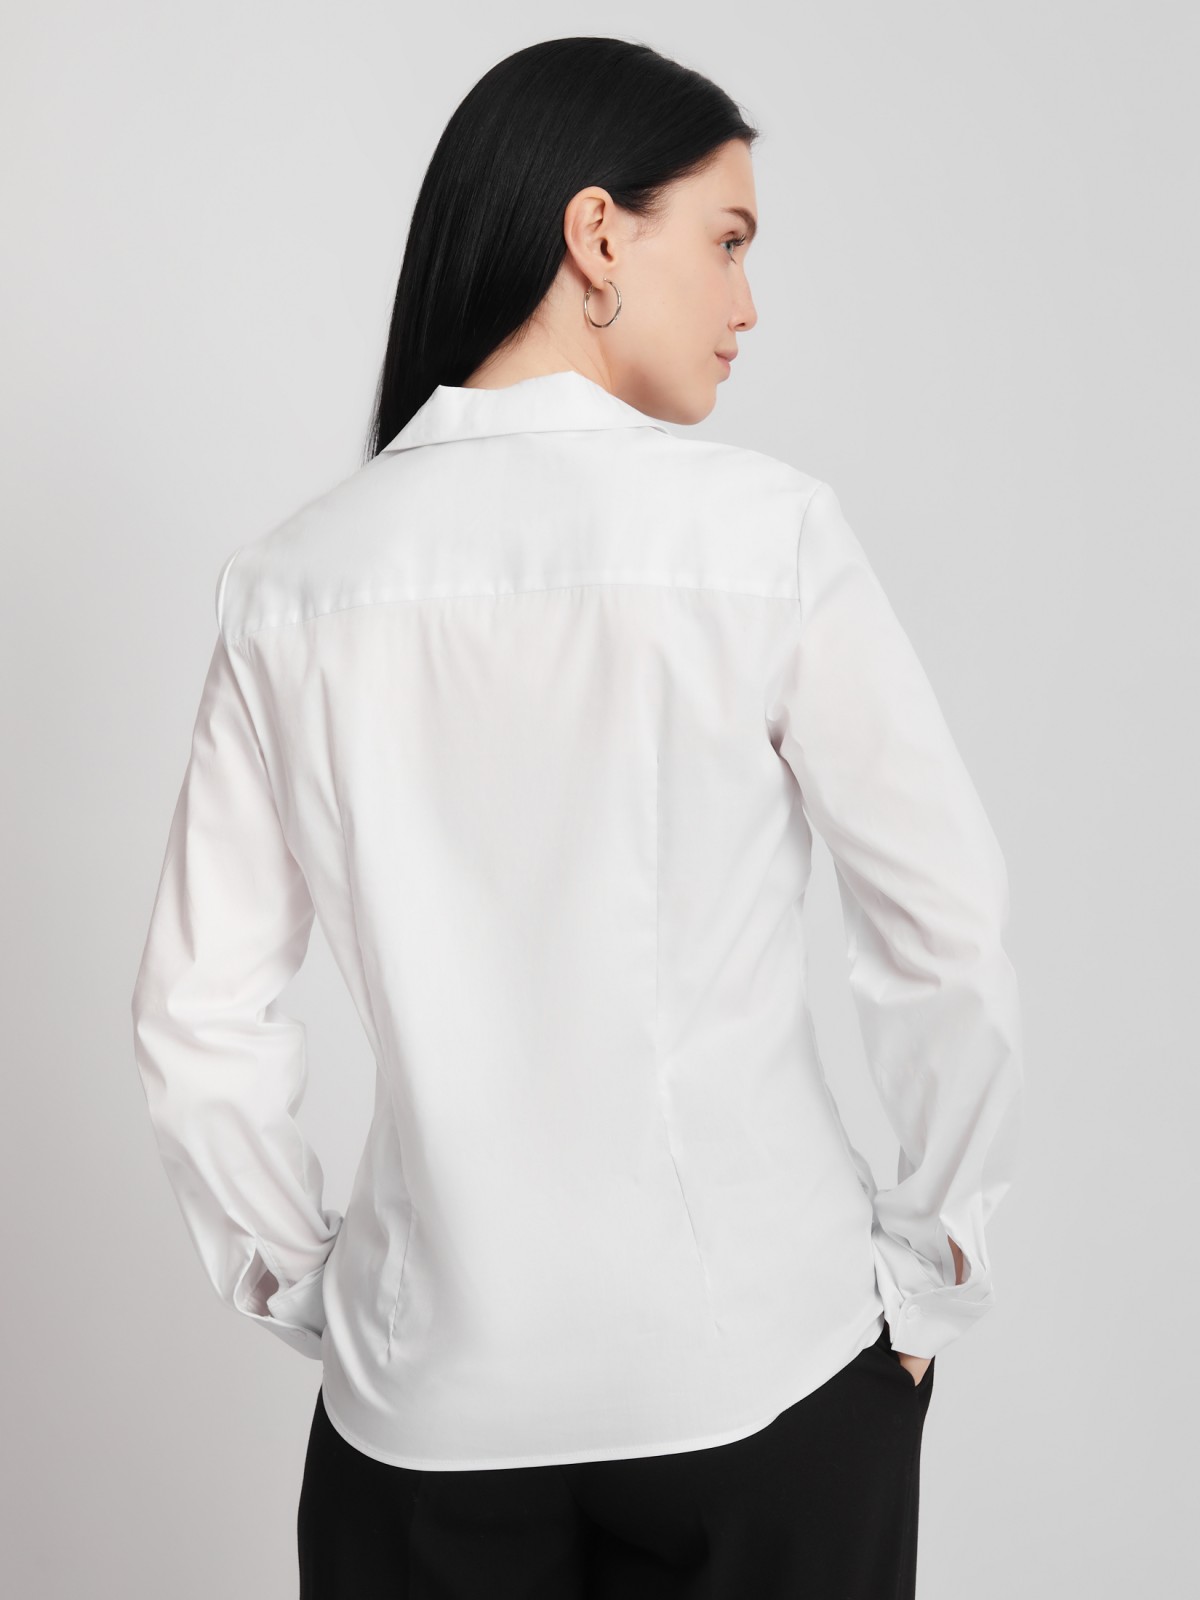 Офисная рубашка с вырезом и карманом zolla 023311159112, цвет белый, размер S - фото 6